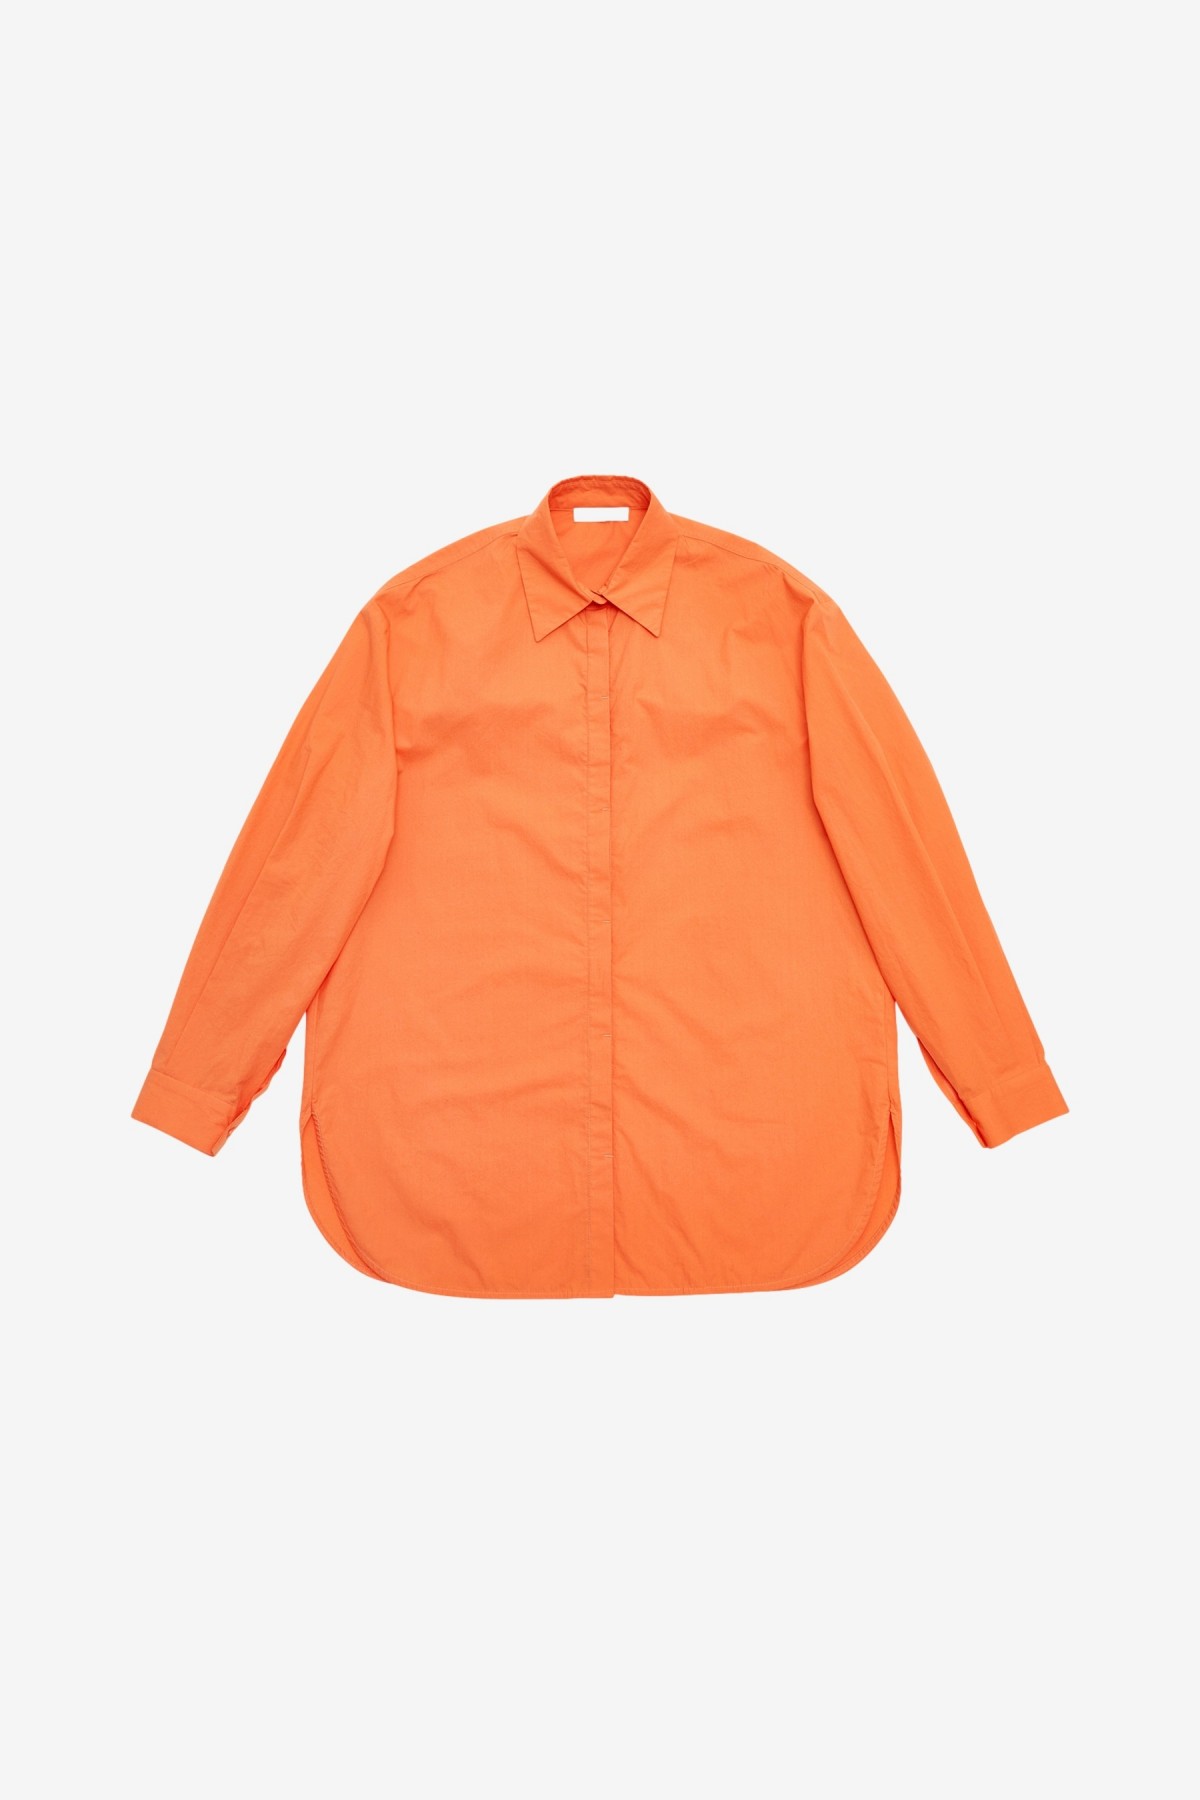 Amomento Oversized Shirt in Orange